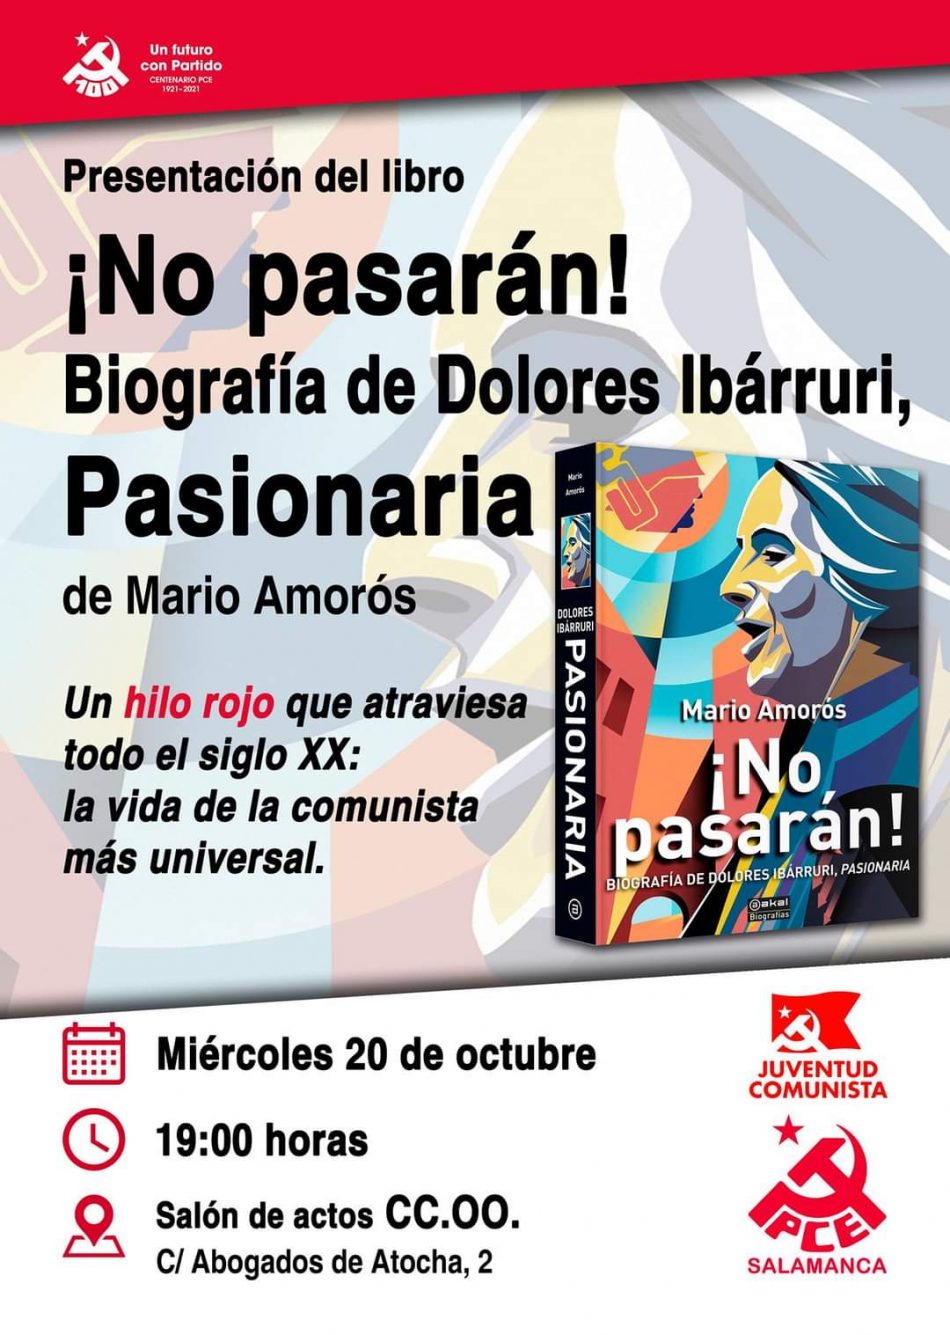 El PCE comienza las celebraciones de su 100 aniversario en Salamanca presentando un libro sobre La Pasionaria